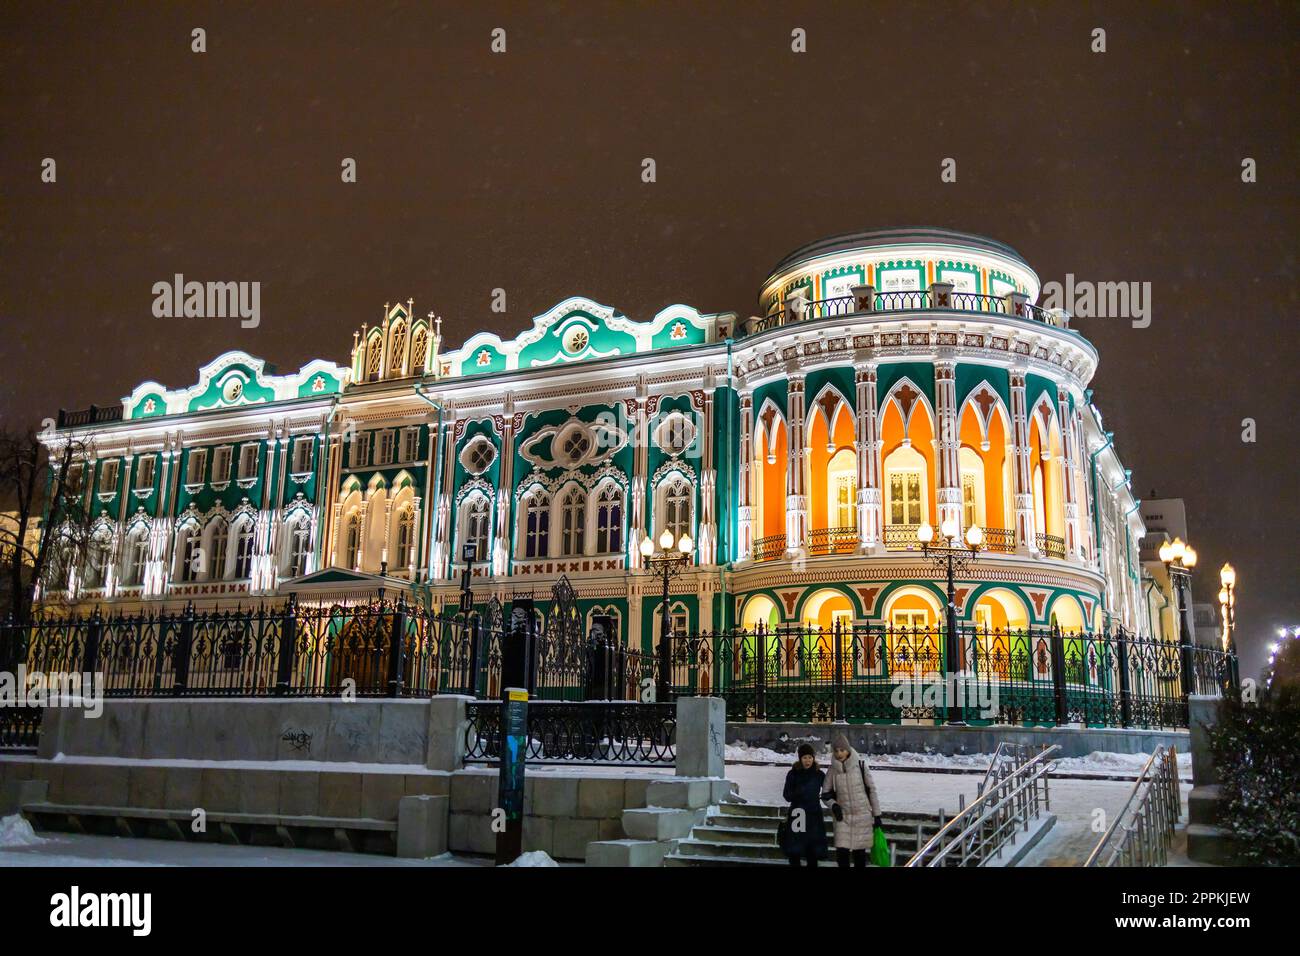 EKATERINBOURG, 18 décembre 2021 : Maison Sevastyanov aussi Chambre des syndicats à Ekaterinbourg en Russie la nuit et la saison hivernale. C'est un palais construit dans le premier quart du XIX siècle sur les rives de l'étang de la ville, formé par un barrage sur la rivière Iset. Banque D'Images